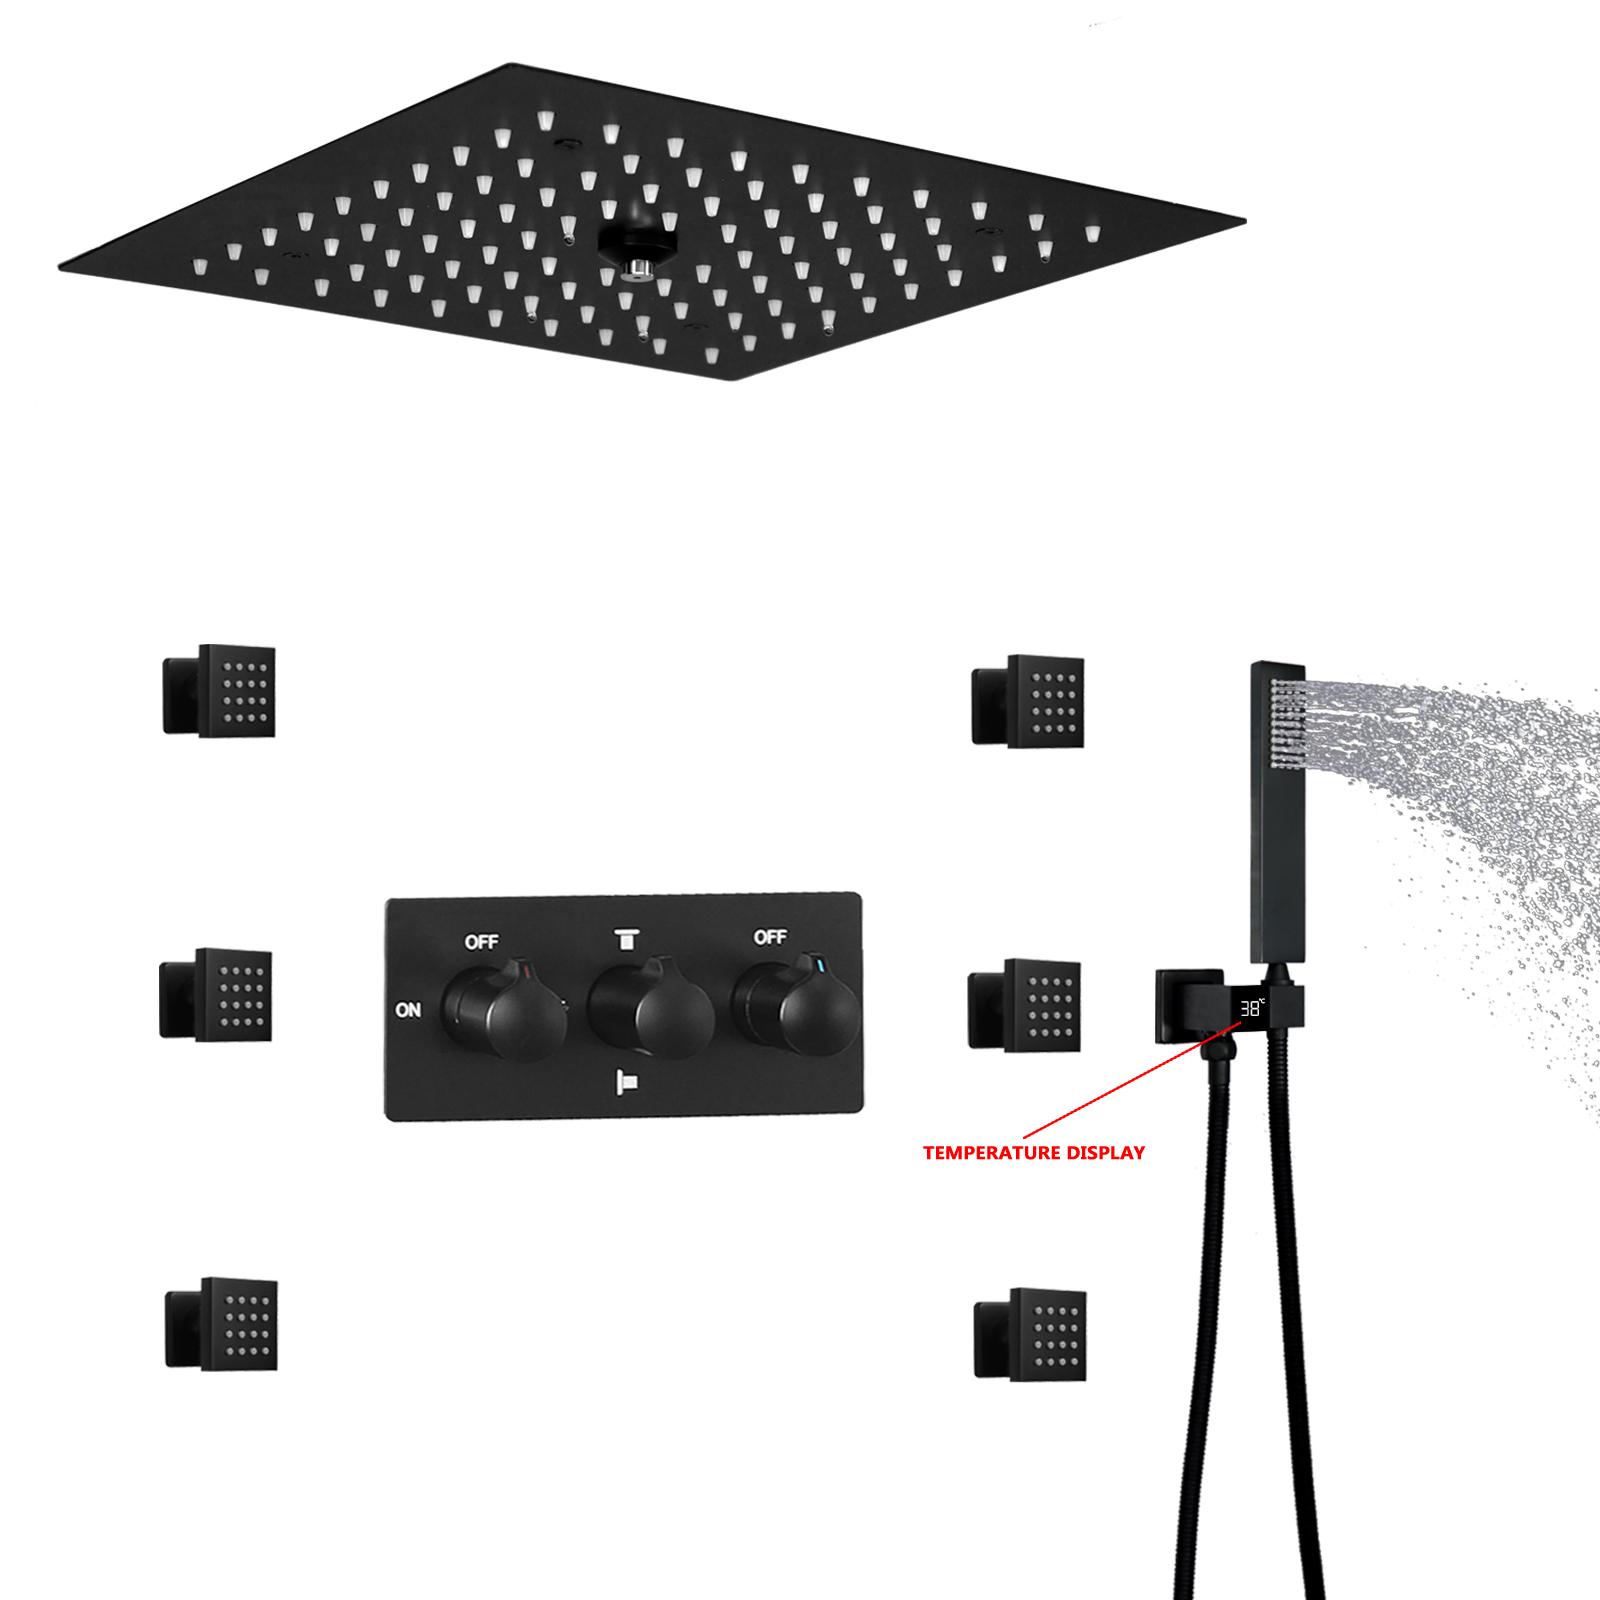 A evolução dos chuveiros LED em banheiros modernos